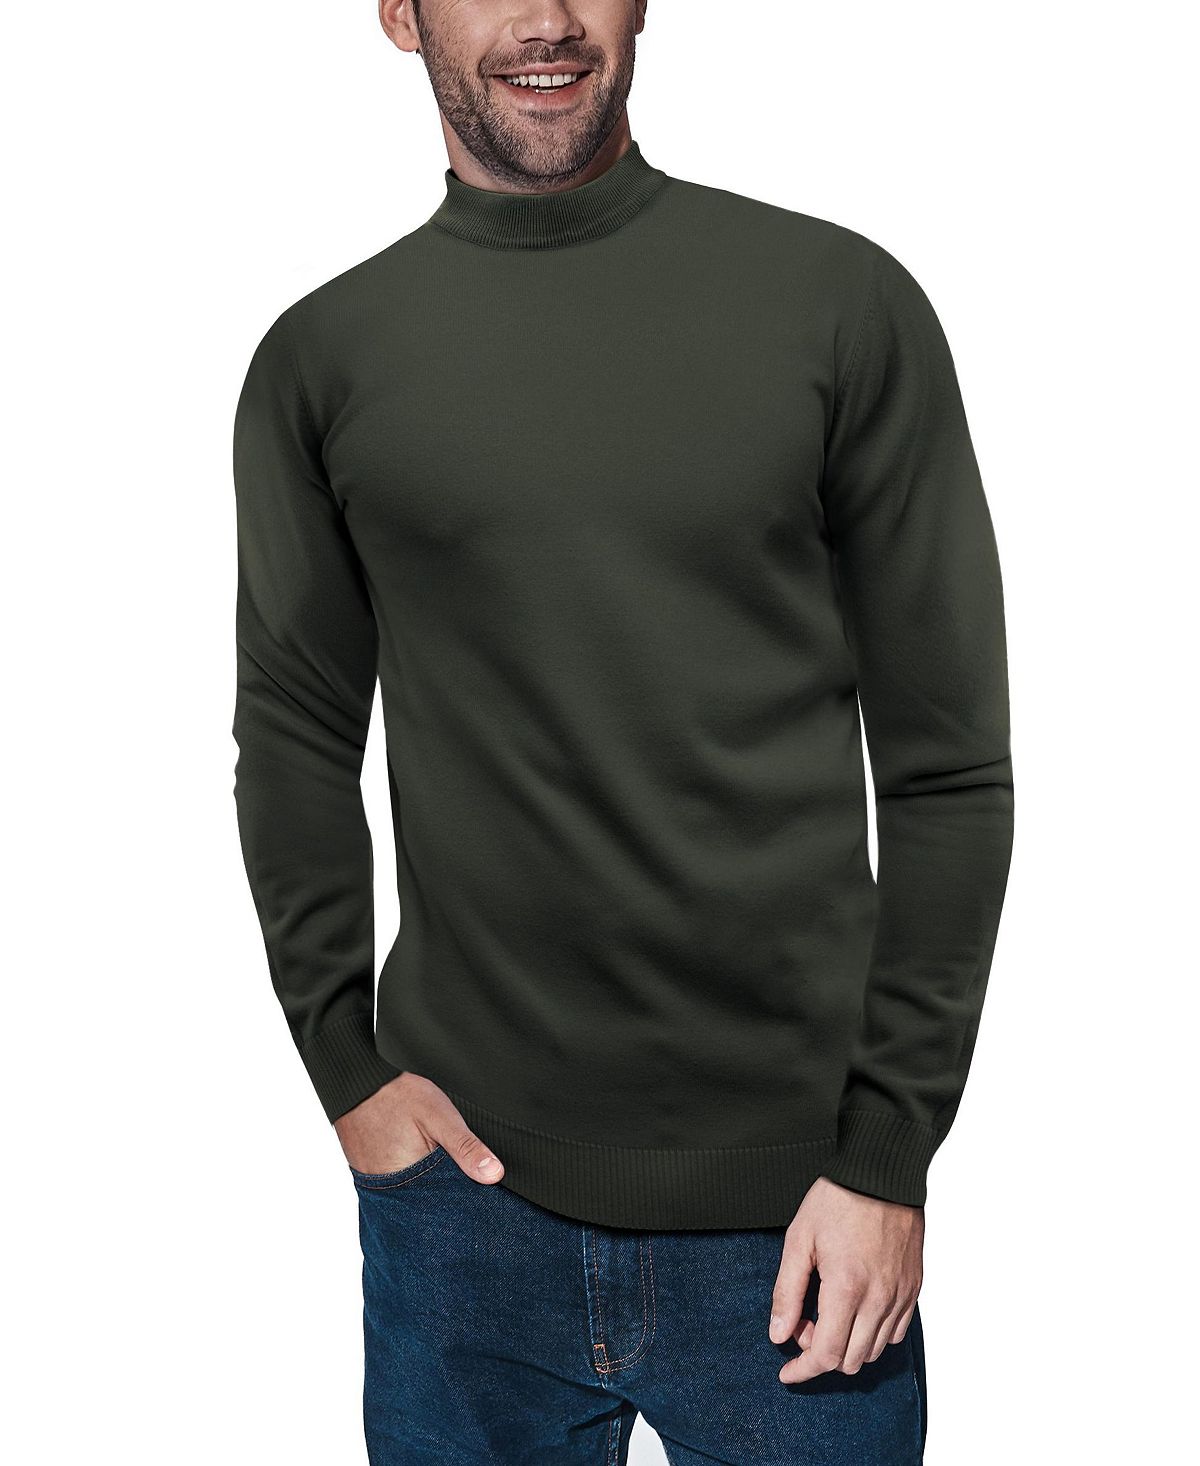 Мужской базовый пуловер средней плотности с воротником-стойкой X-Ray графеновый базовый слой средней плотности с воротником стойкой женские whitespace цвет graphene black